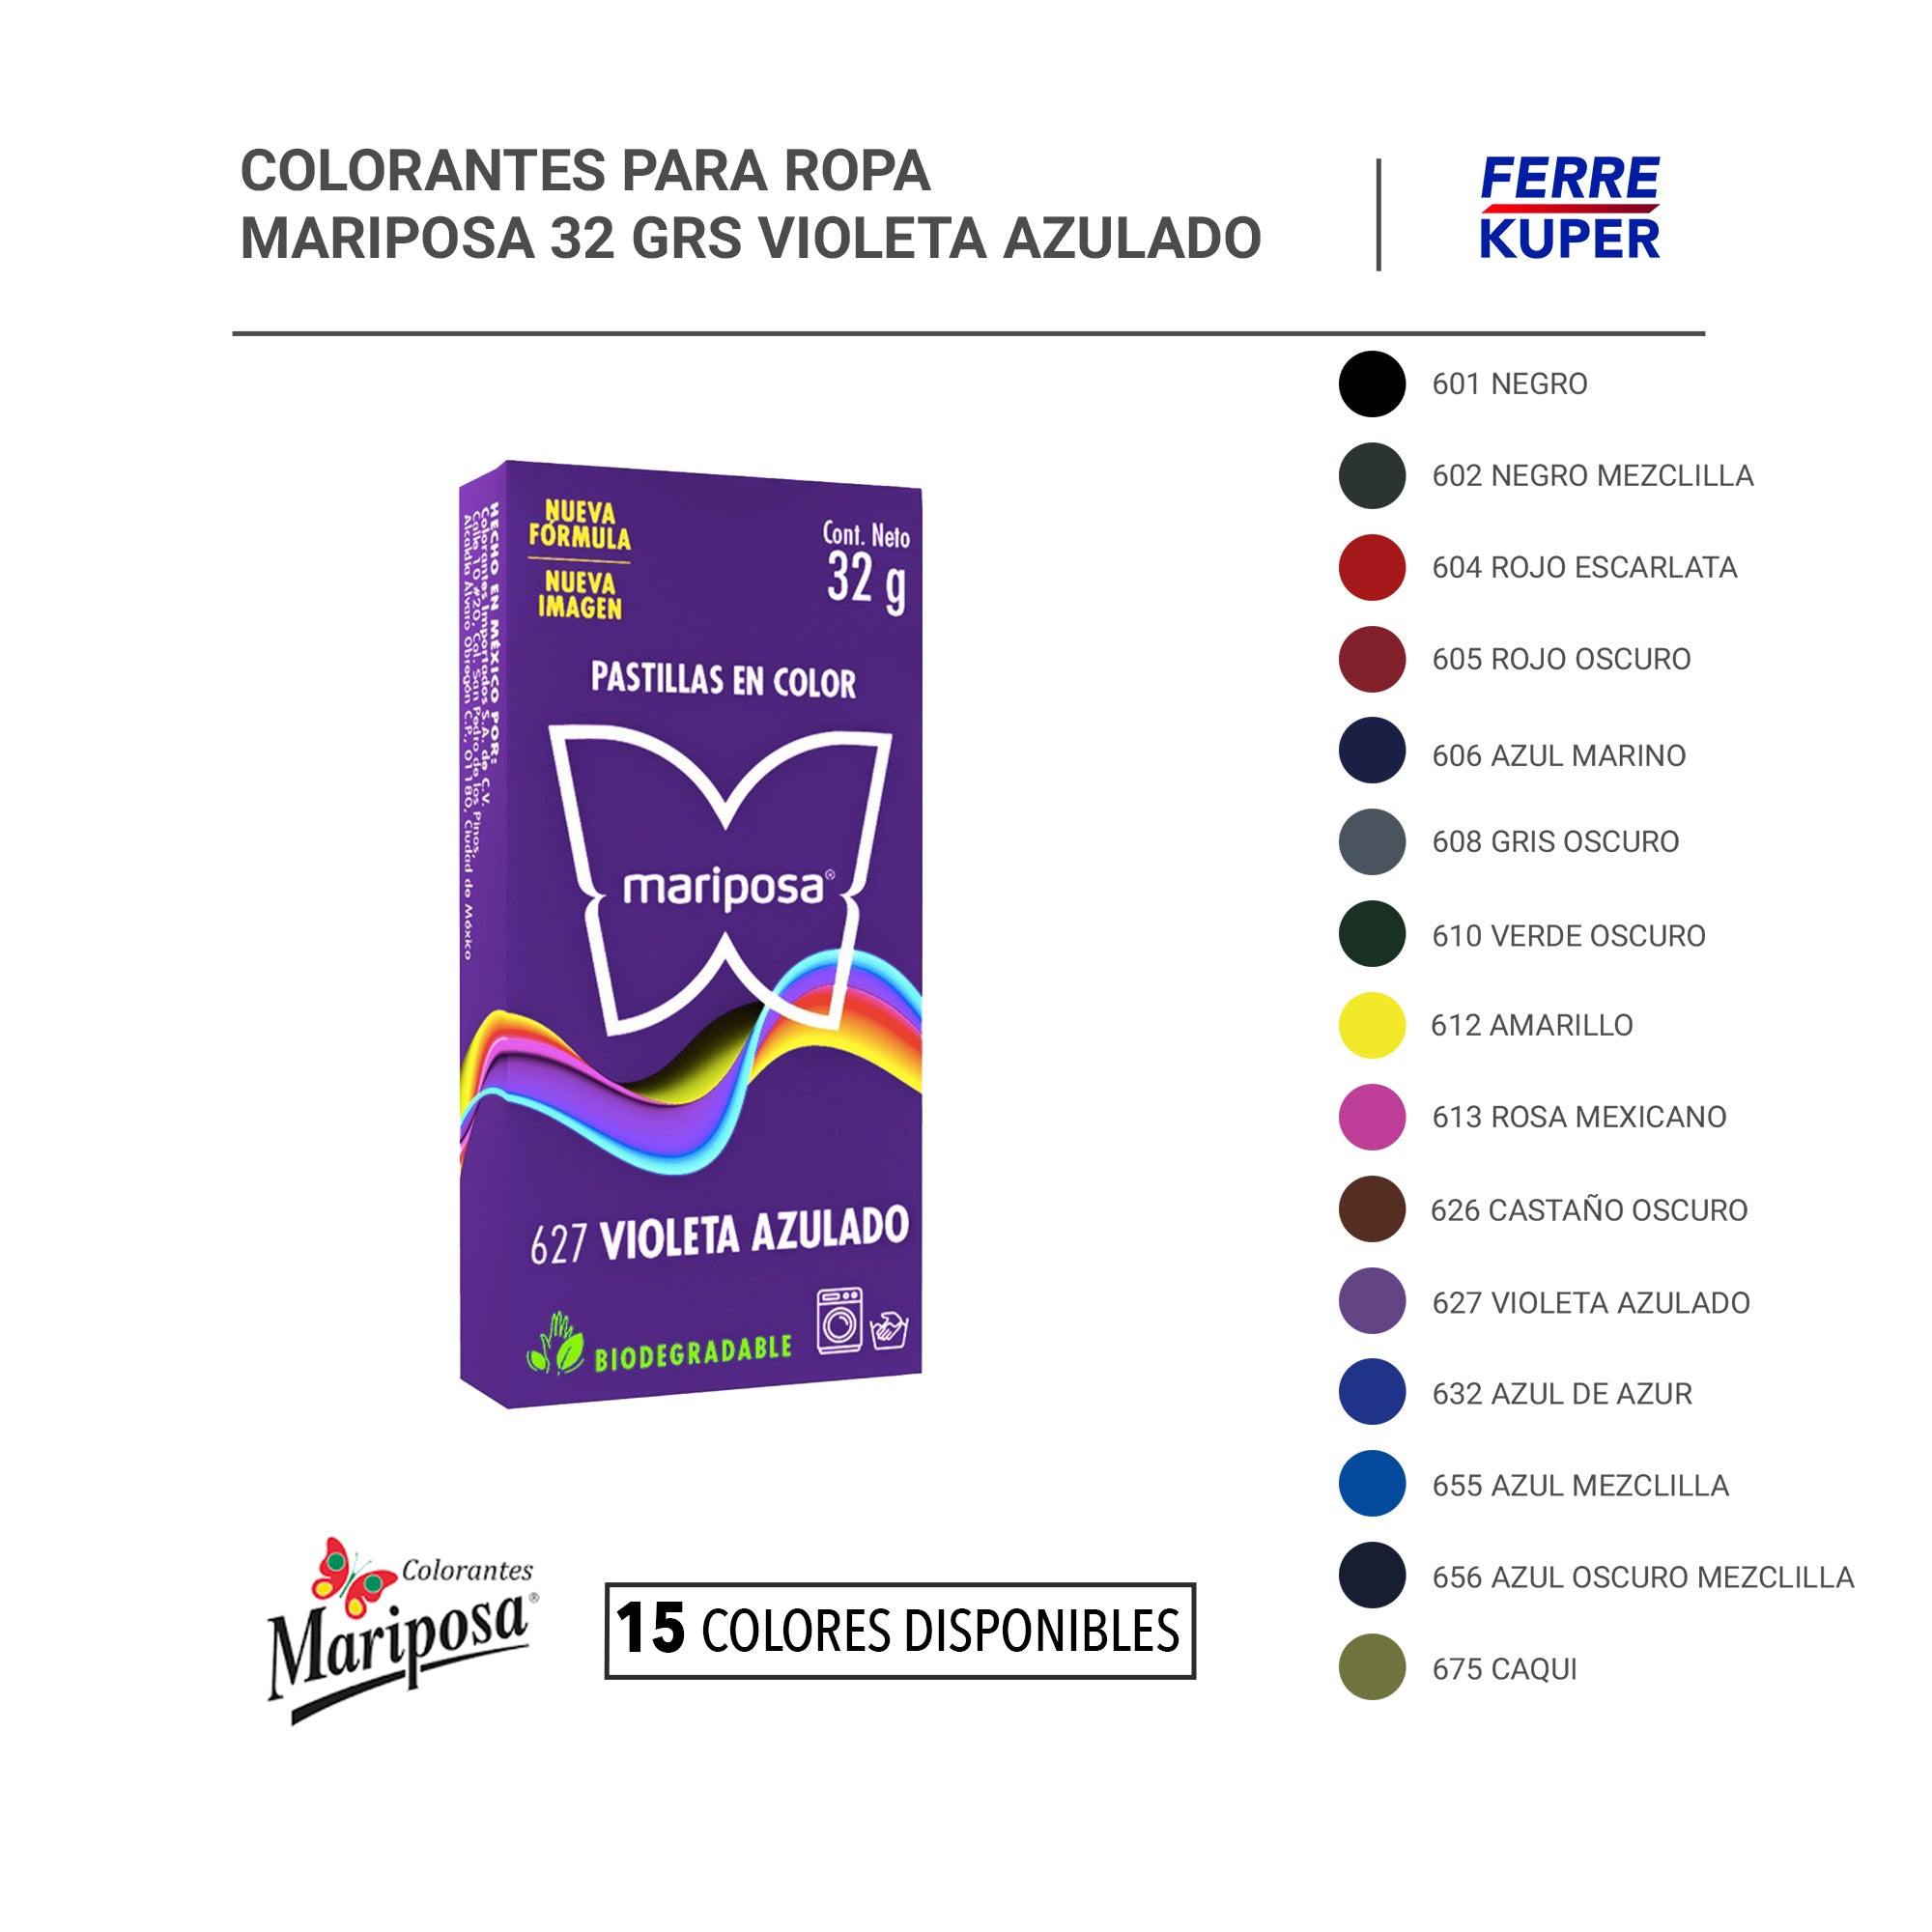 Colorantes para Ropa Mariposa 32 grs – FERREKUPER